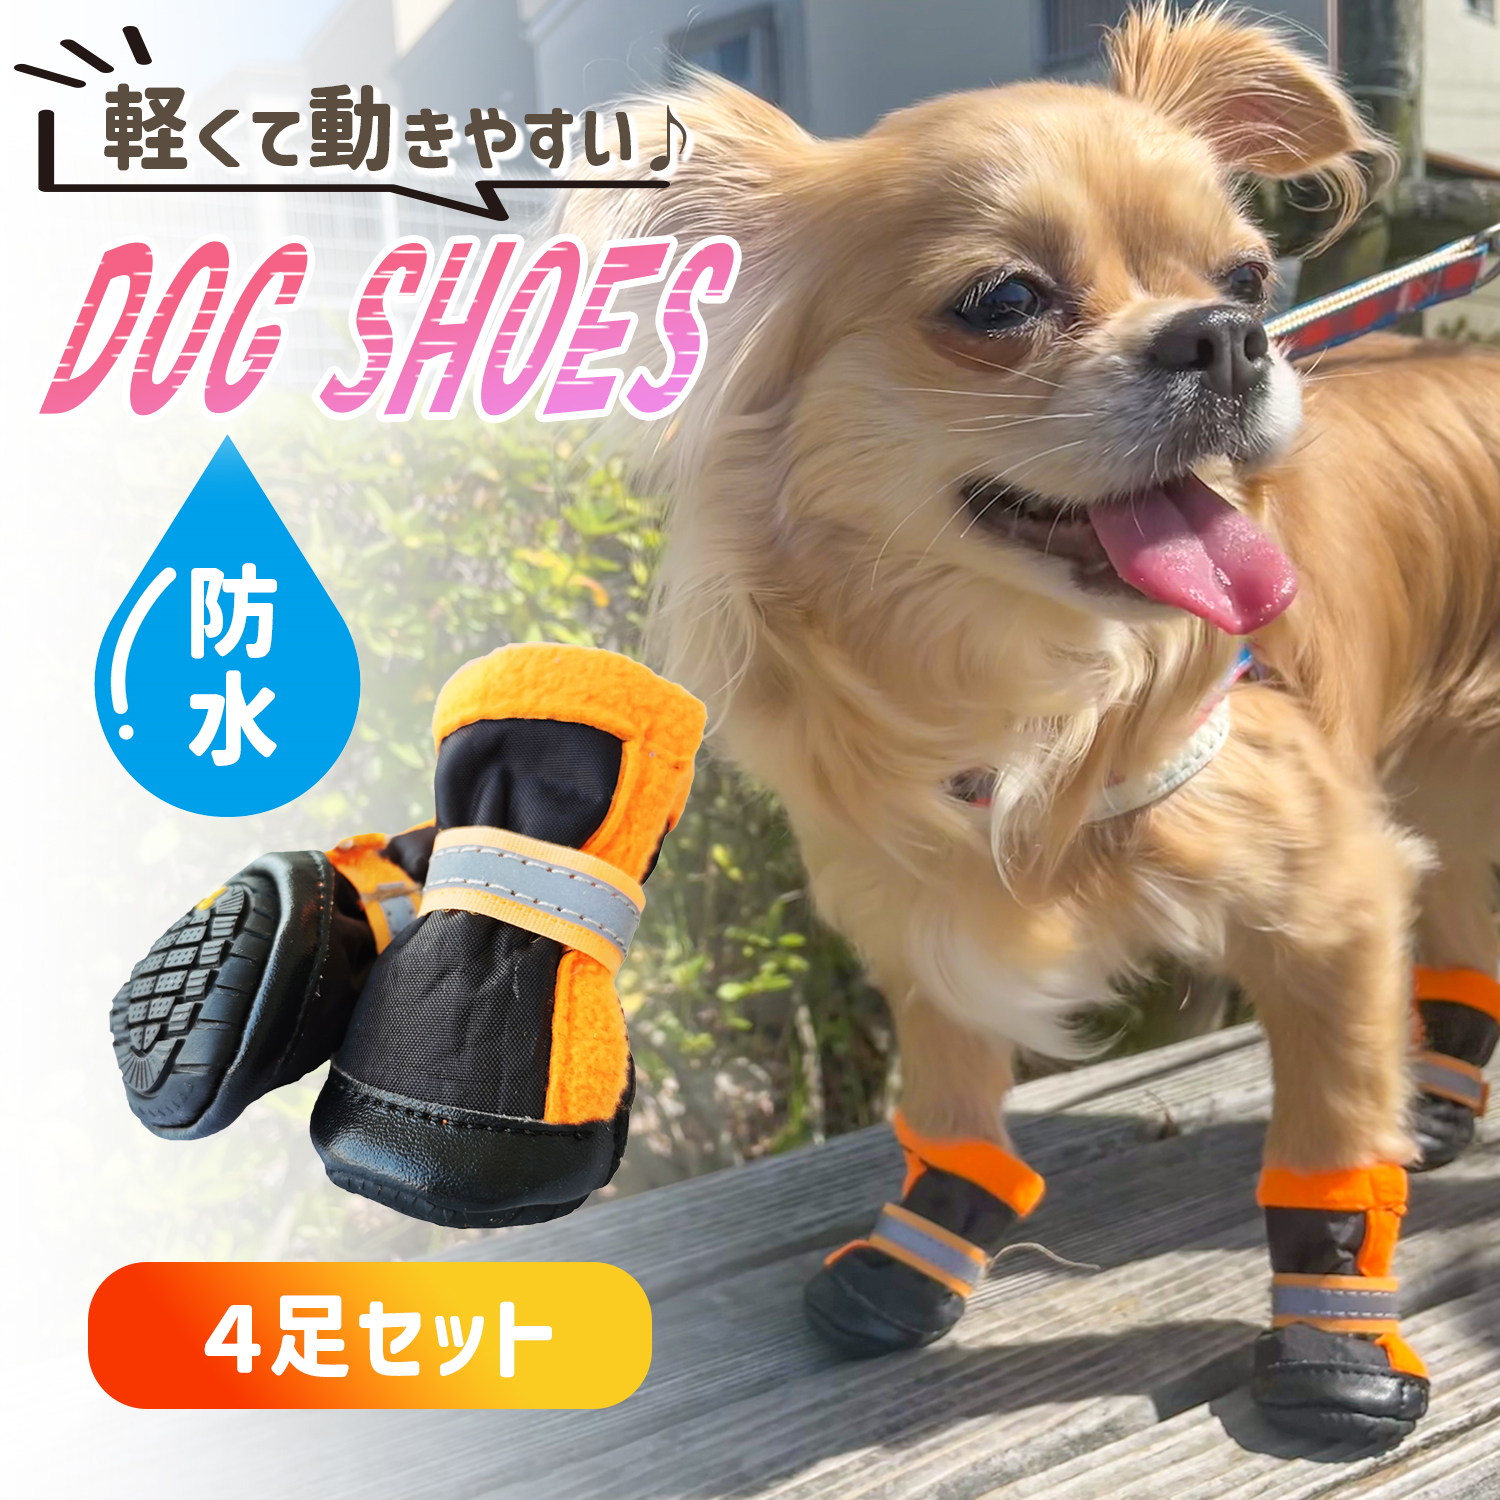  собака обувь собака. обувь прогулка для собака для обувь собака .. нет предотвращение скольжения маленький размер собака резиновые сапоги ботинки nak кольцо домашнее животное обувь водонепроницаемый собака 